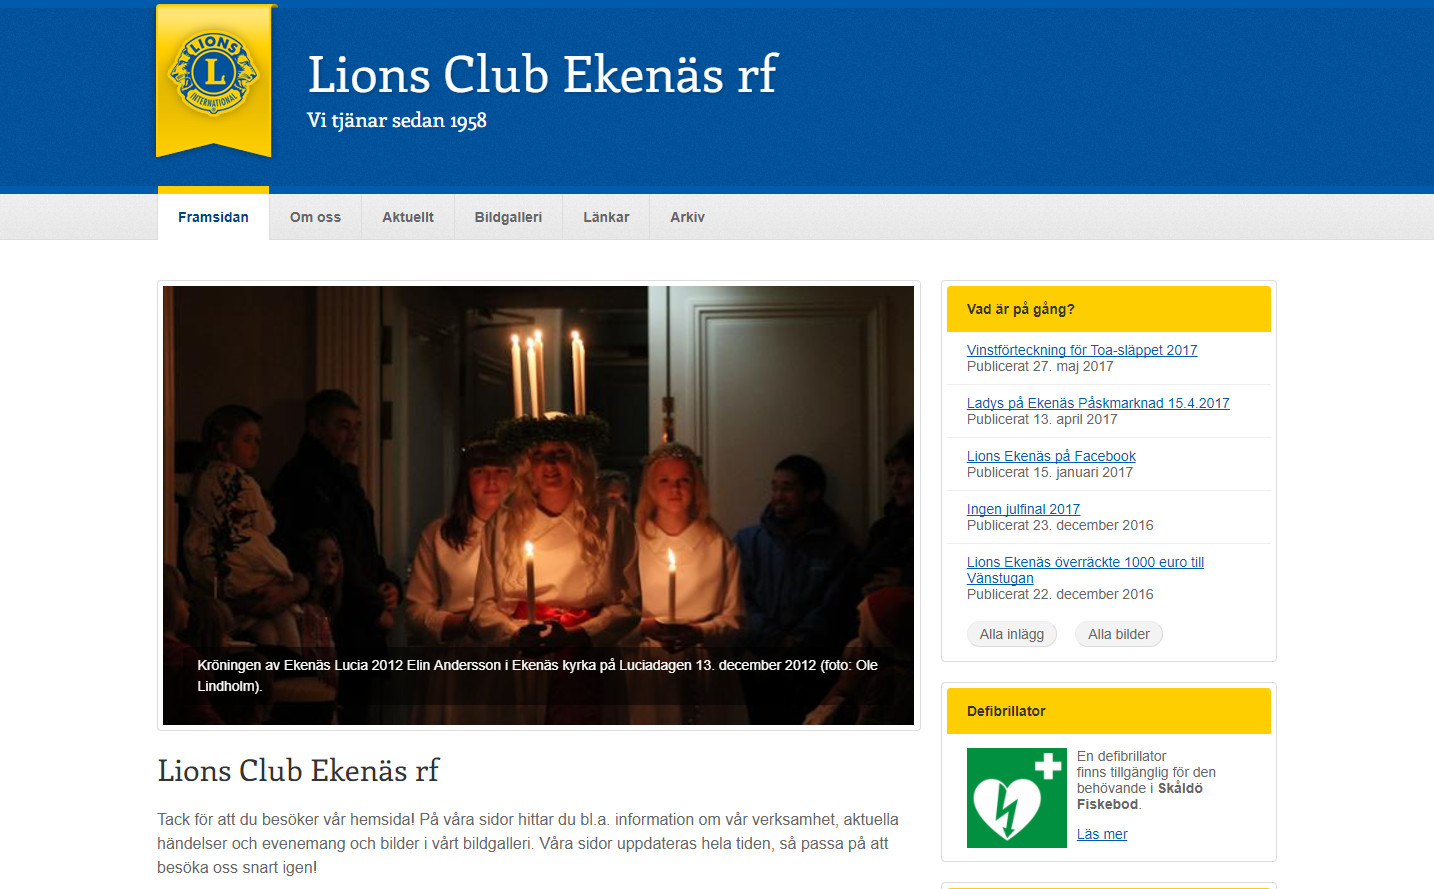 Lions Club Ekenäs rf